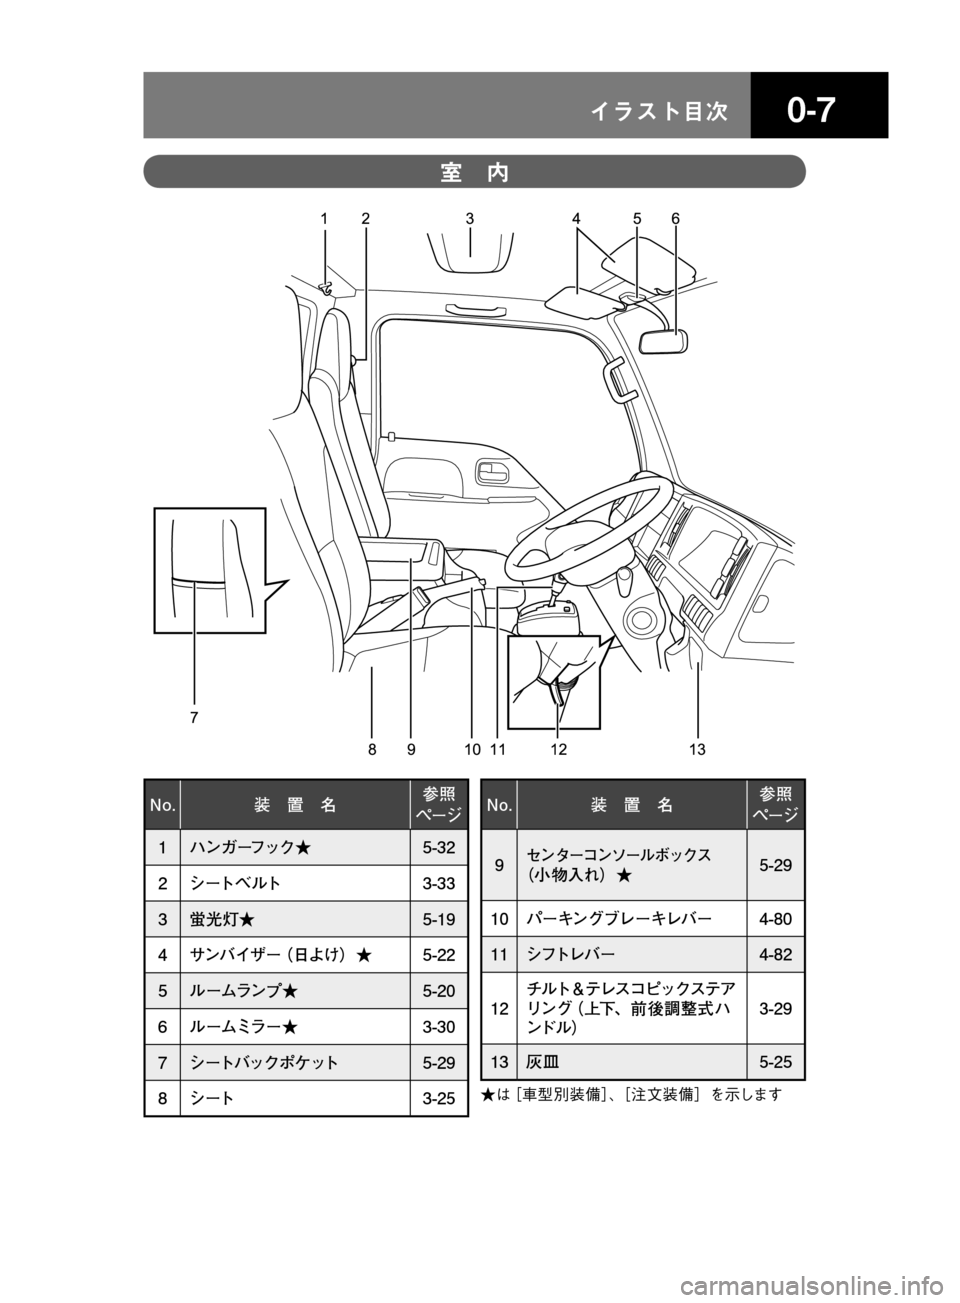 MAZDA MODEL TITAN 2013  タイタン｜取扱説明書 (in Japanese) ��� åµÄèÍ
13 12 8 7
10 11 9 12 3 4 56
�/�P� 
